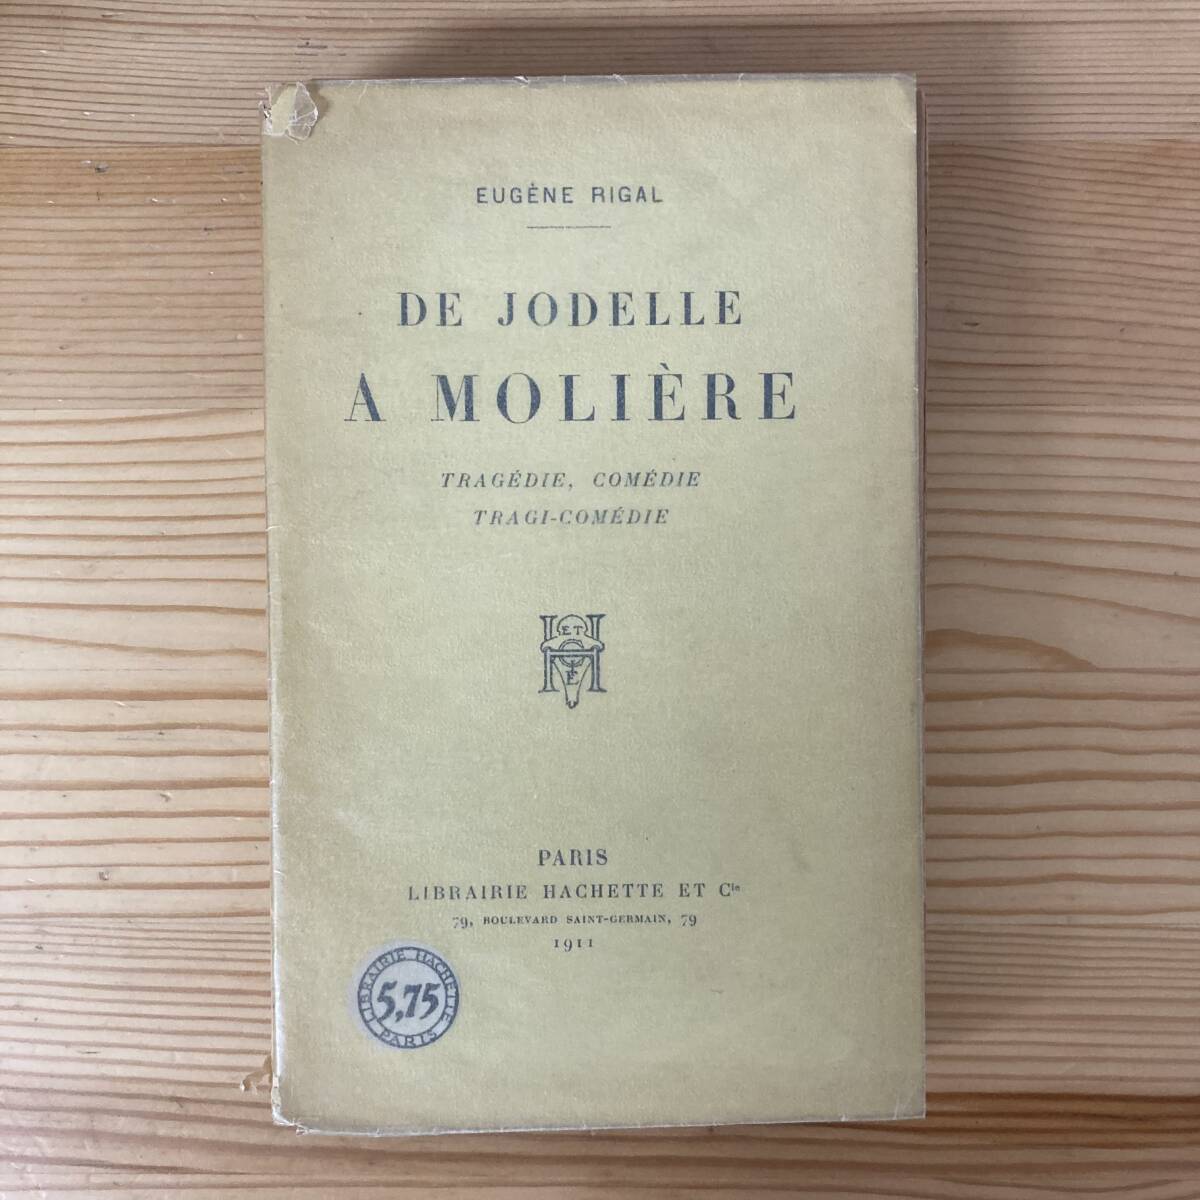 【仏語洋書】DE JODELLE A MOLIERE / Eugene Rigal（著）【エチエンヌ・ジョデル モリエール】_画像1